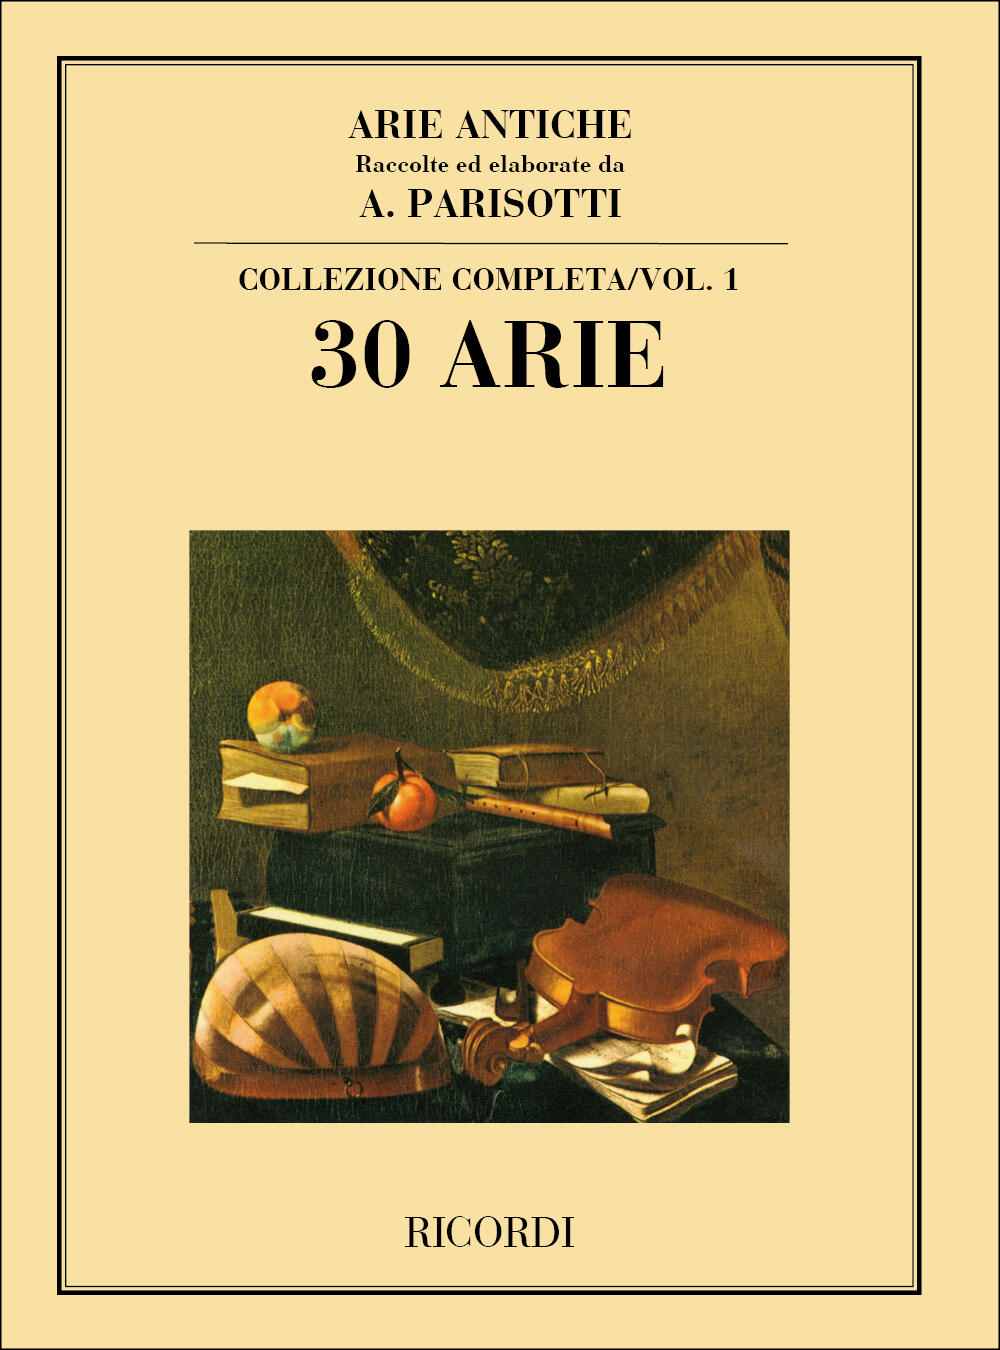 Arie Antiche: 30 Arie Vol. 1 Raccolte ed elaborate da A. Parisotti - Collezione completa : photo 1